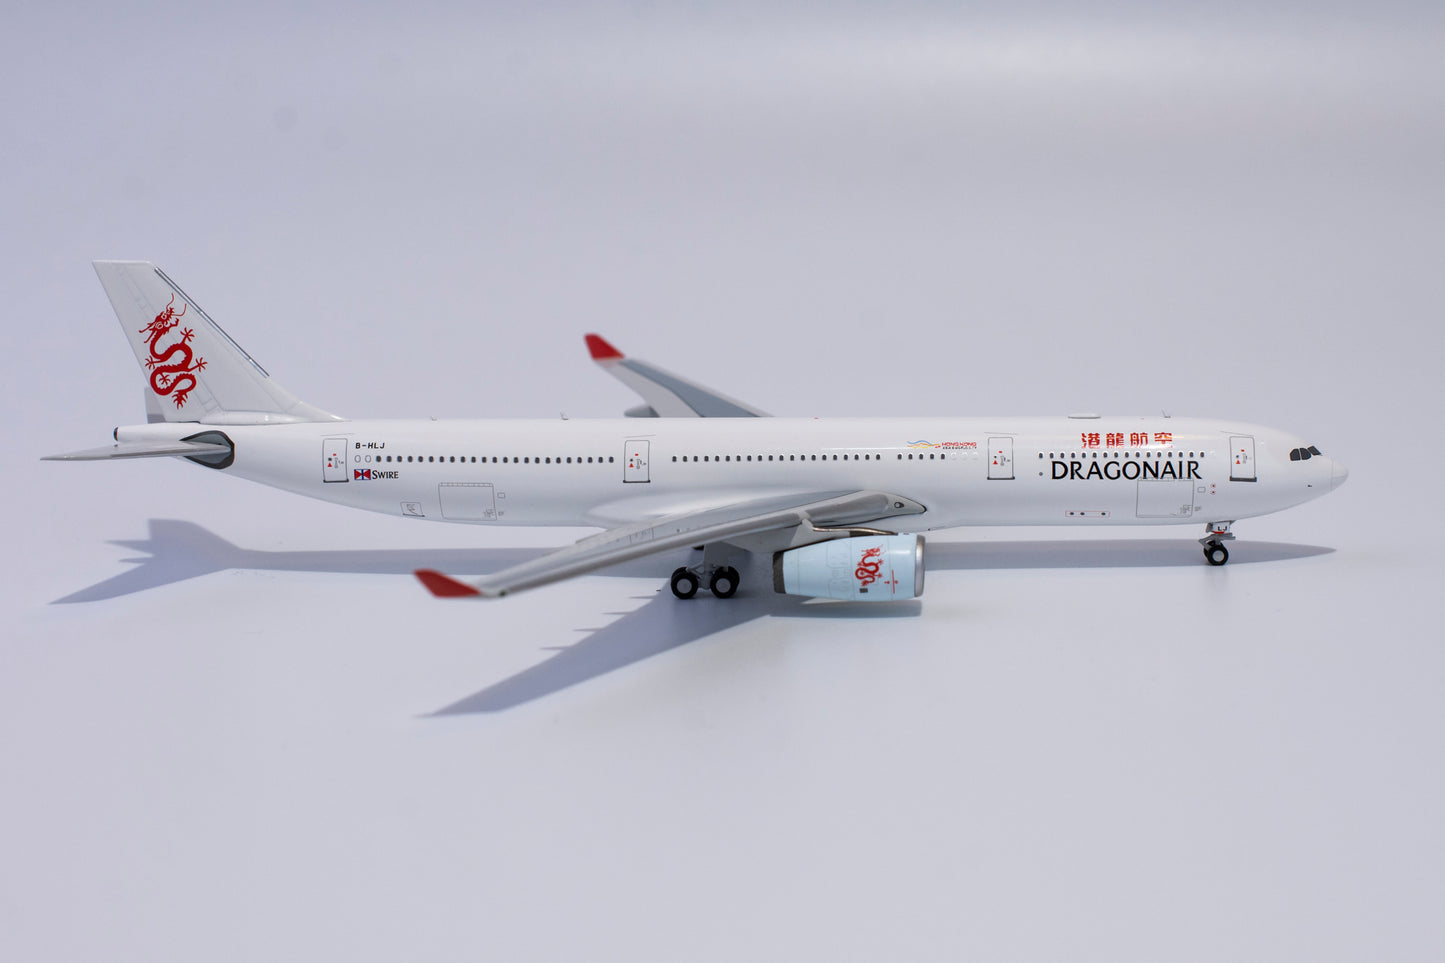 1:400 NG Models Hong Kong Dragon Airlines Airbus A330-300 B-HLJ NG62020